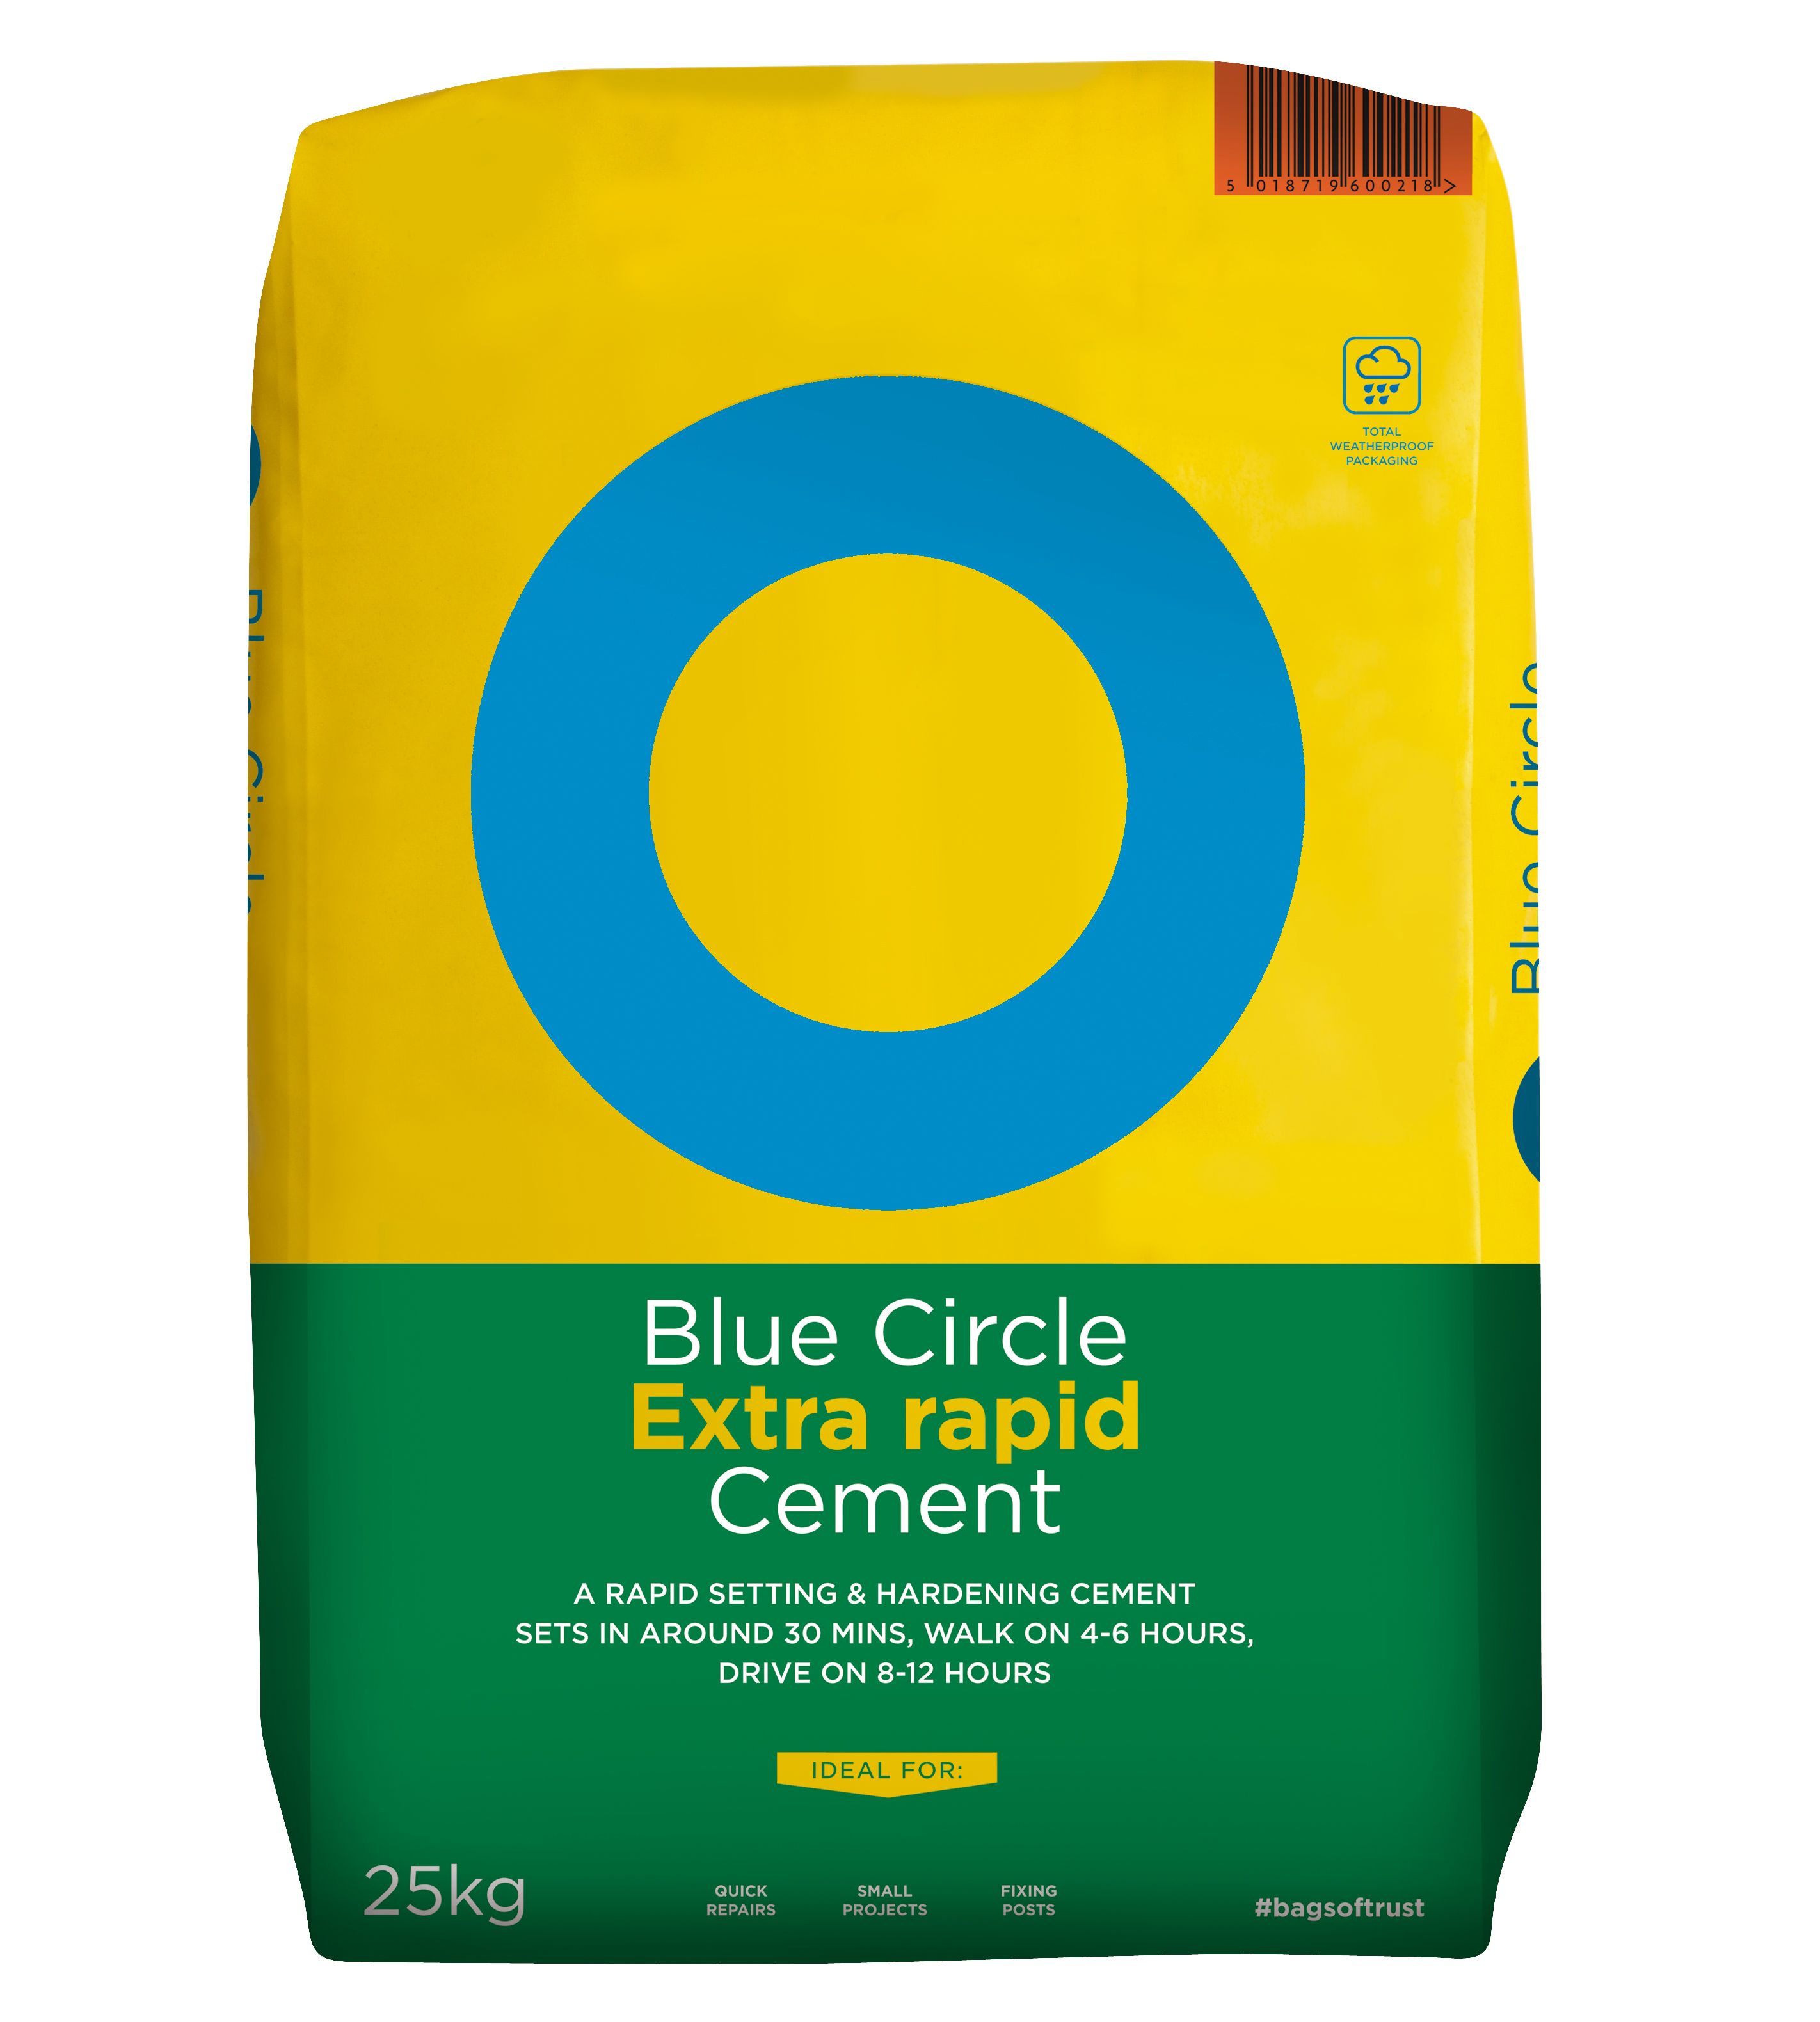 Blue Circle Mastercrete Cement, 12.5kg Handy bag